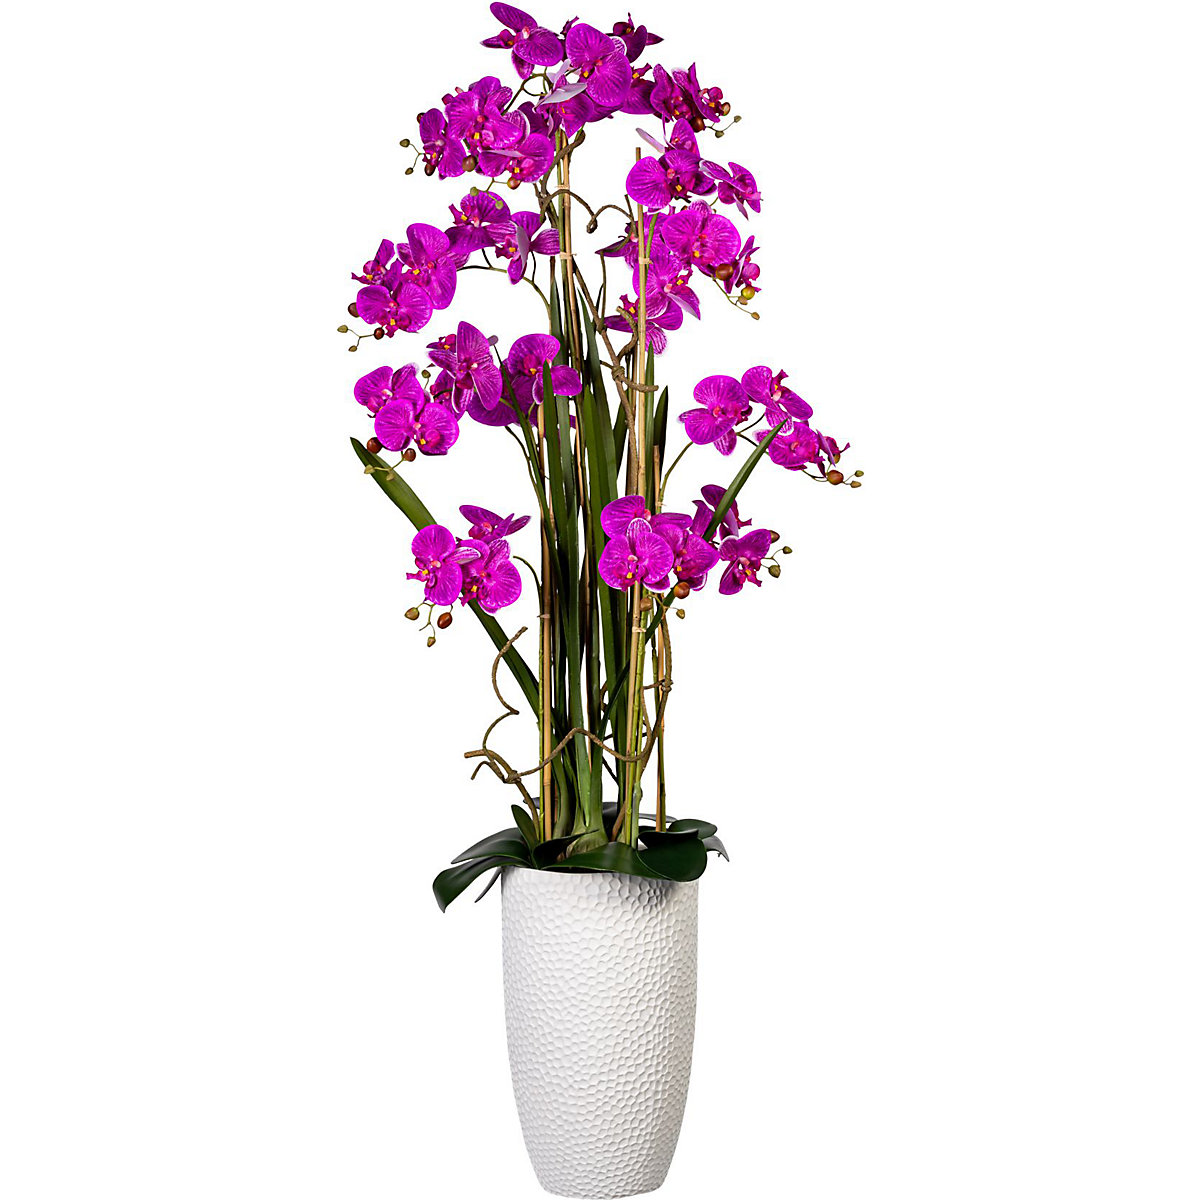 Aranžman orhideje falenopsis